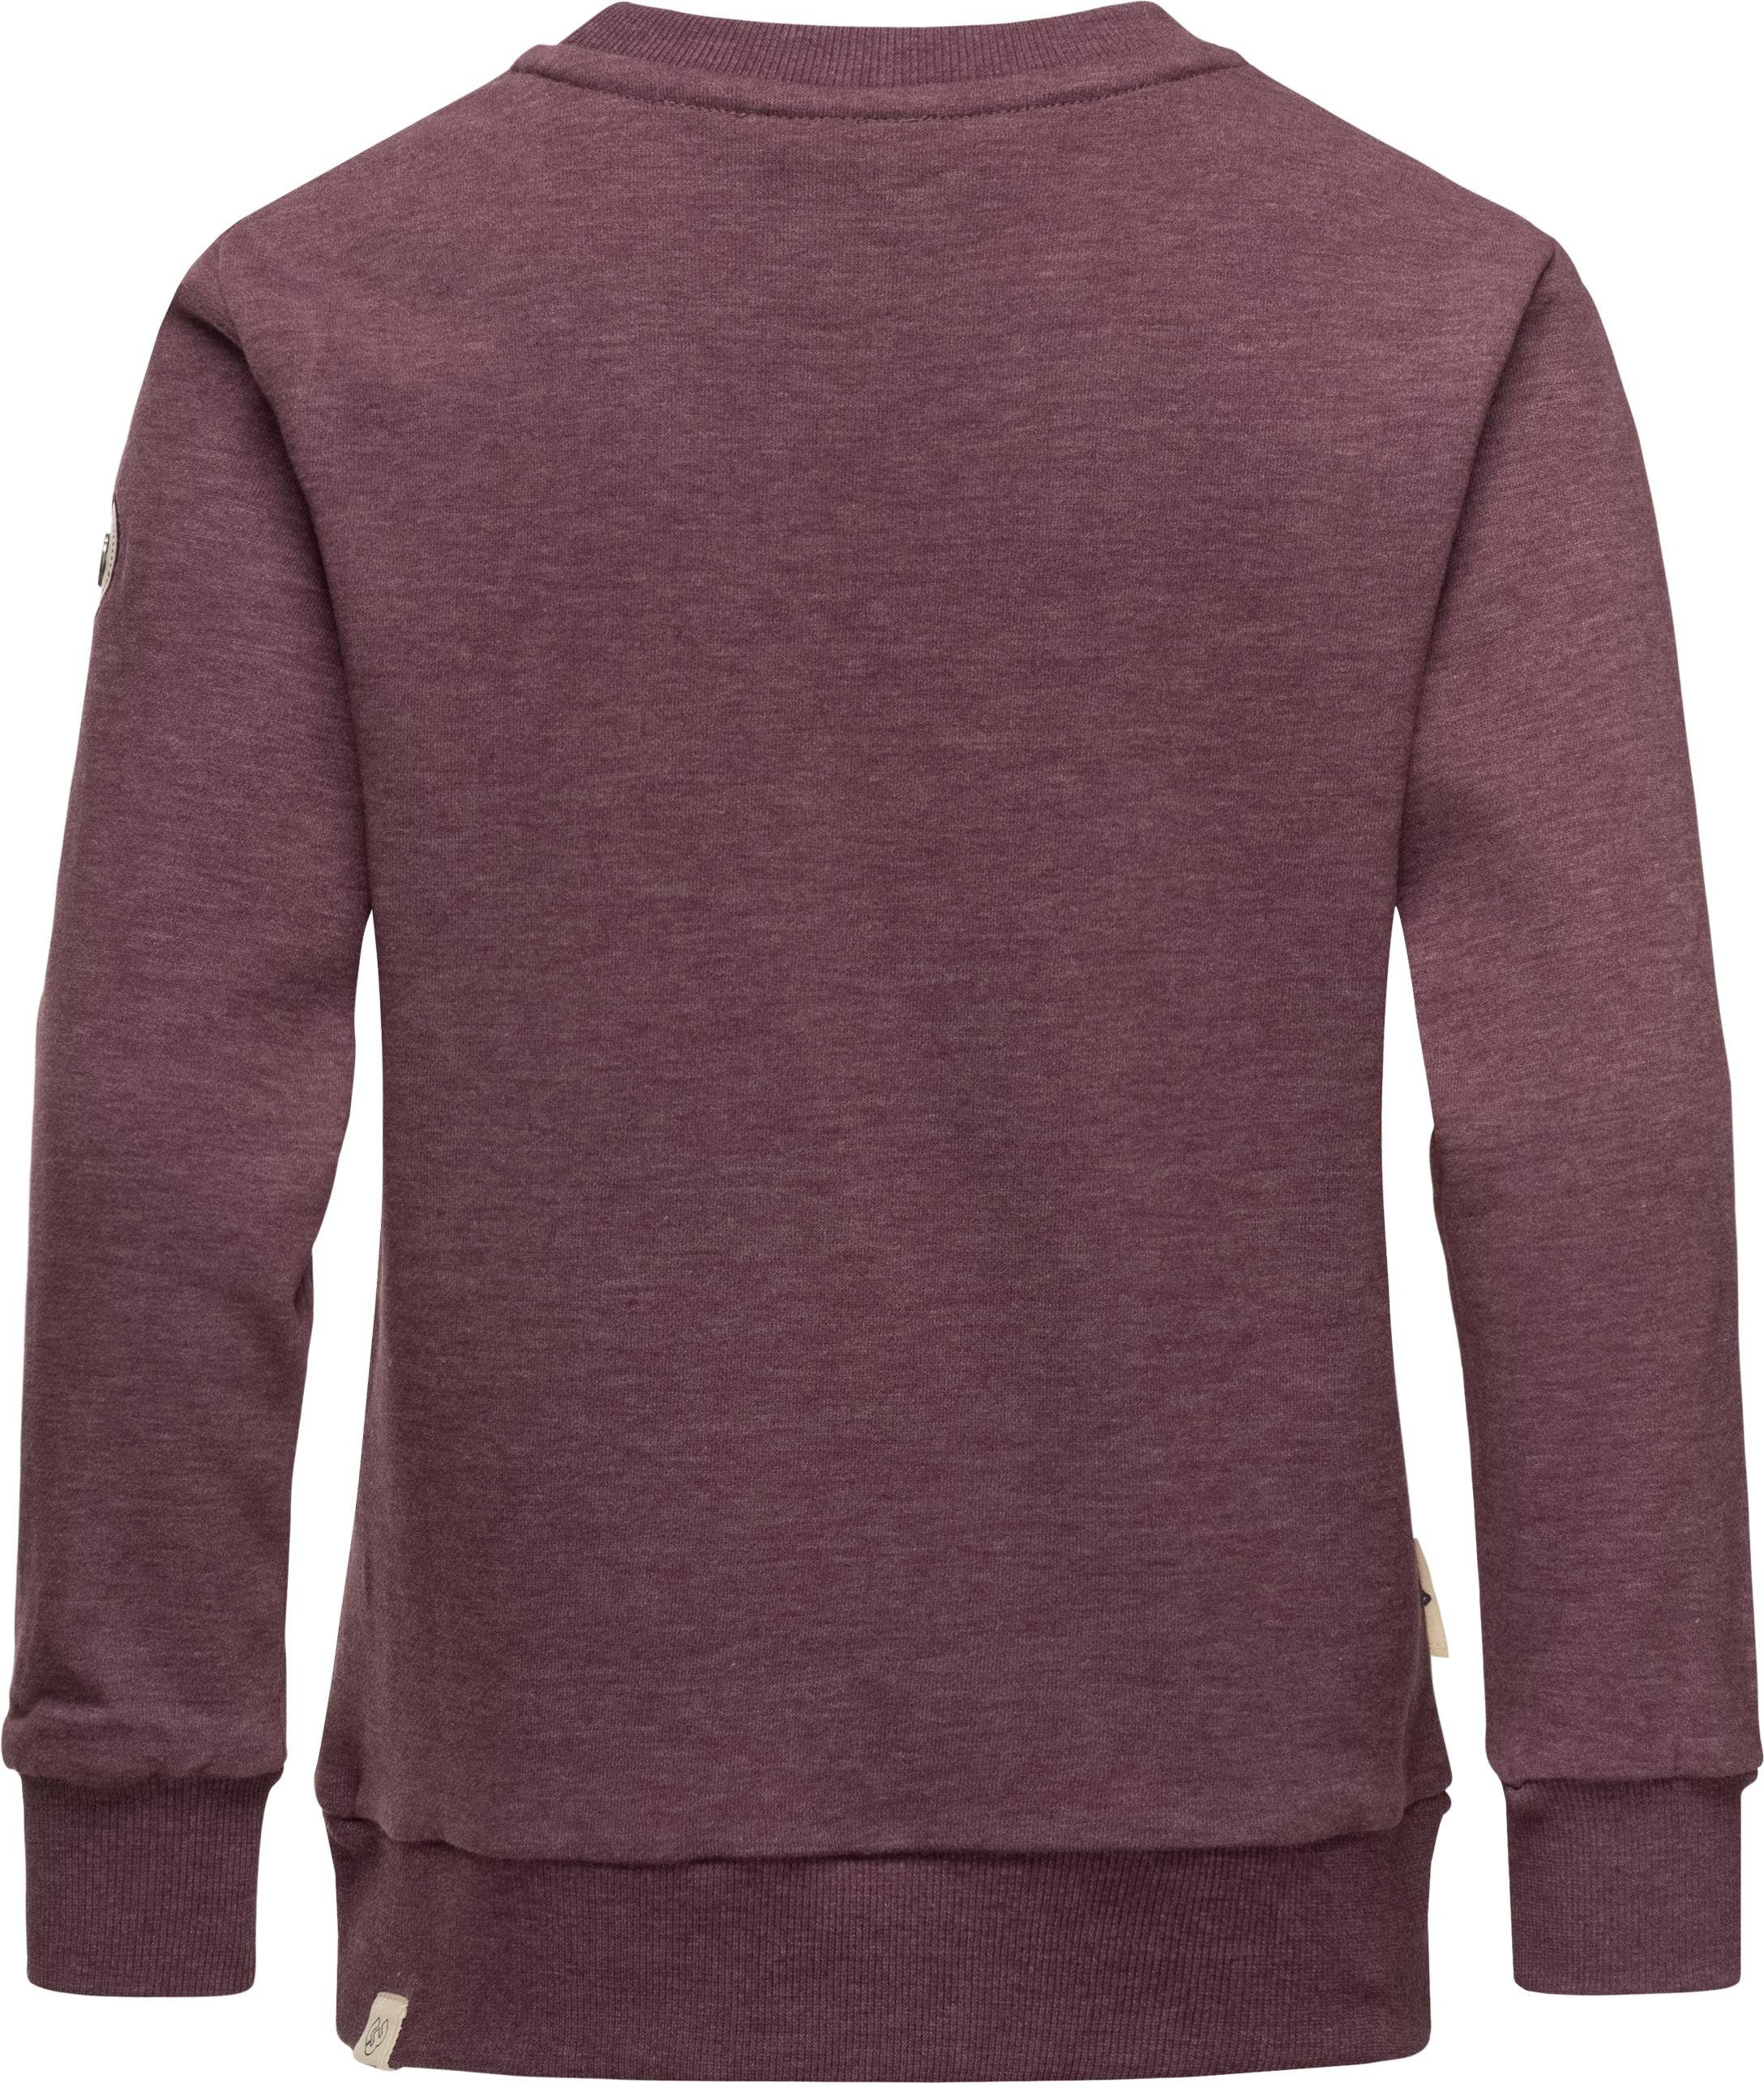 Ragwear Sweater Evka pflaume Mädchen Print mit coolem Organic Print stylisches Sweatshirt